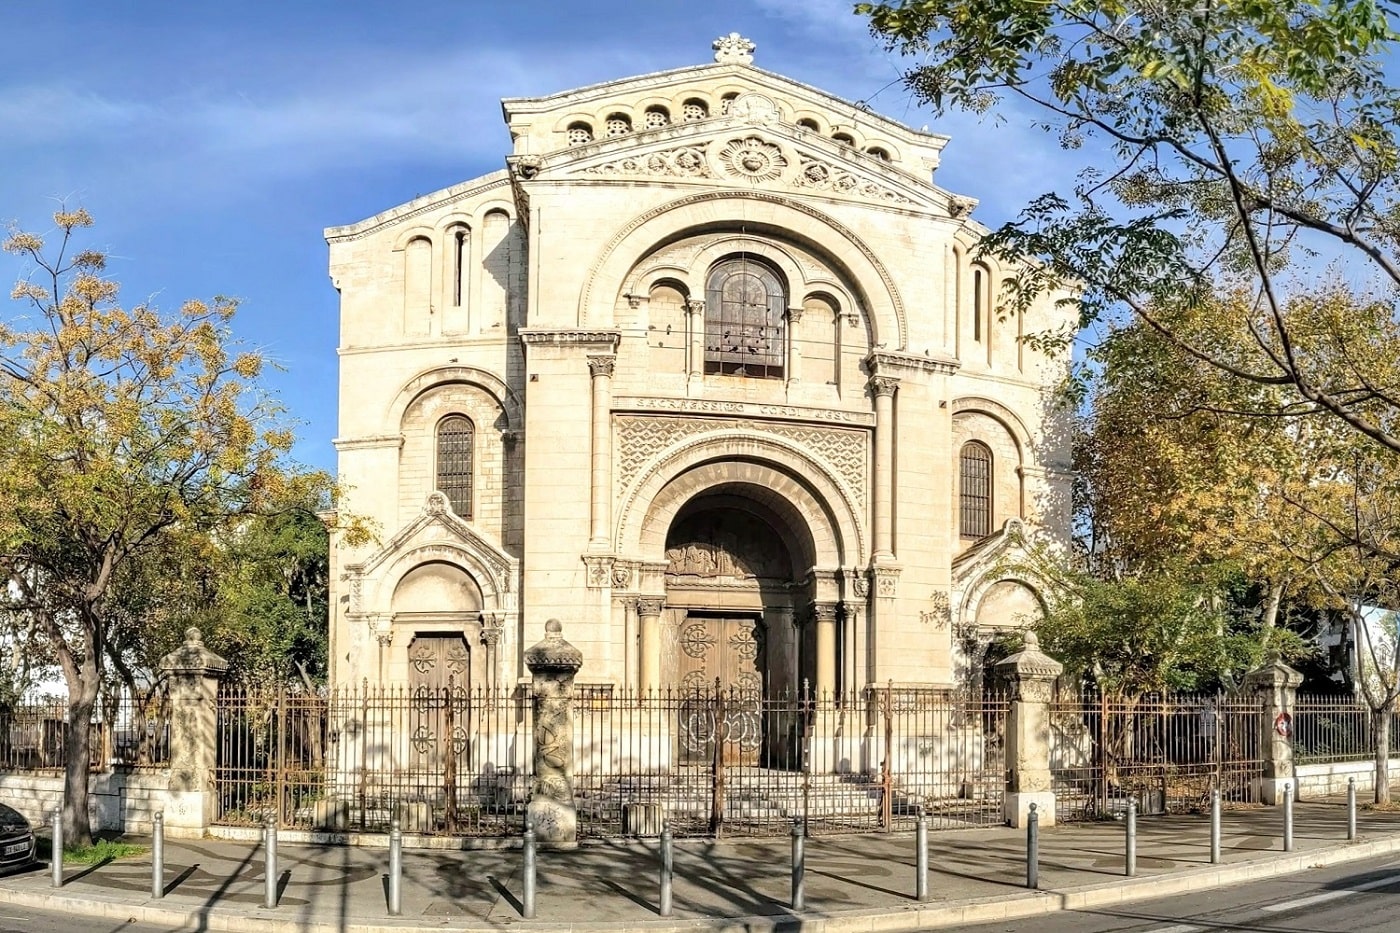 église d'Arenc, Le Département ouvre le dialogue sur l&rsquo;avenir de l&rsquo;église d&rsquo;Arenc, Made in Marseille